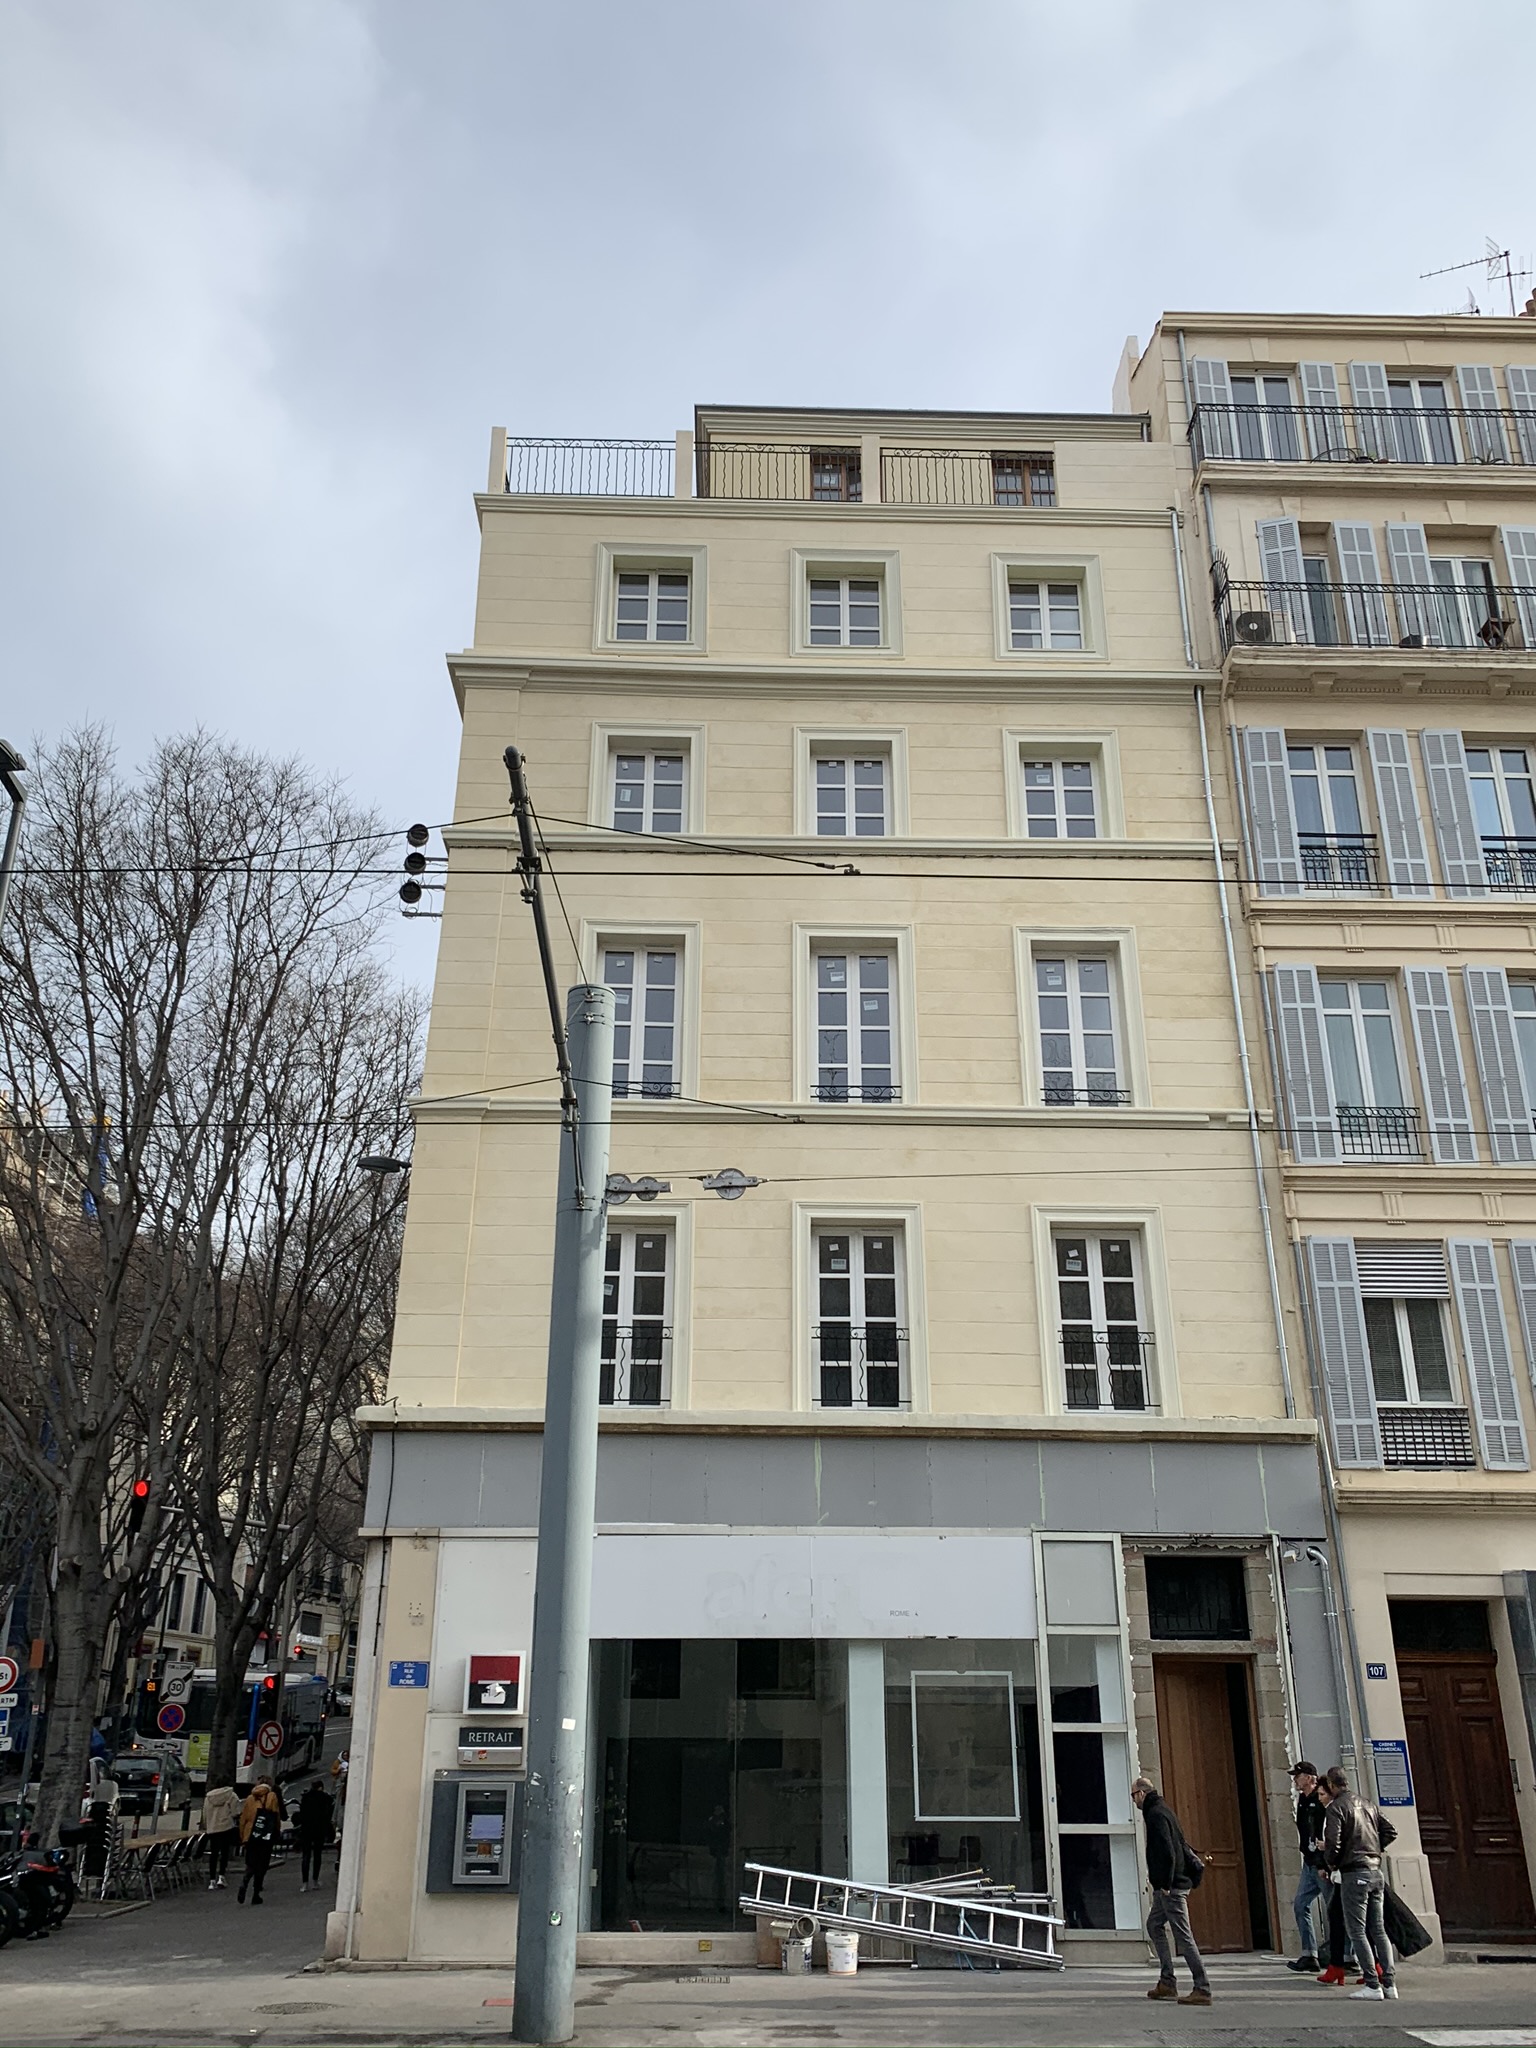 105 Rue de Rome – ICT – Bureau d'études et d'ingénierie